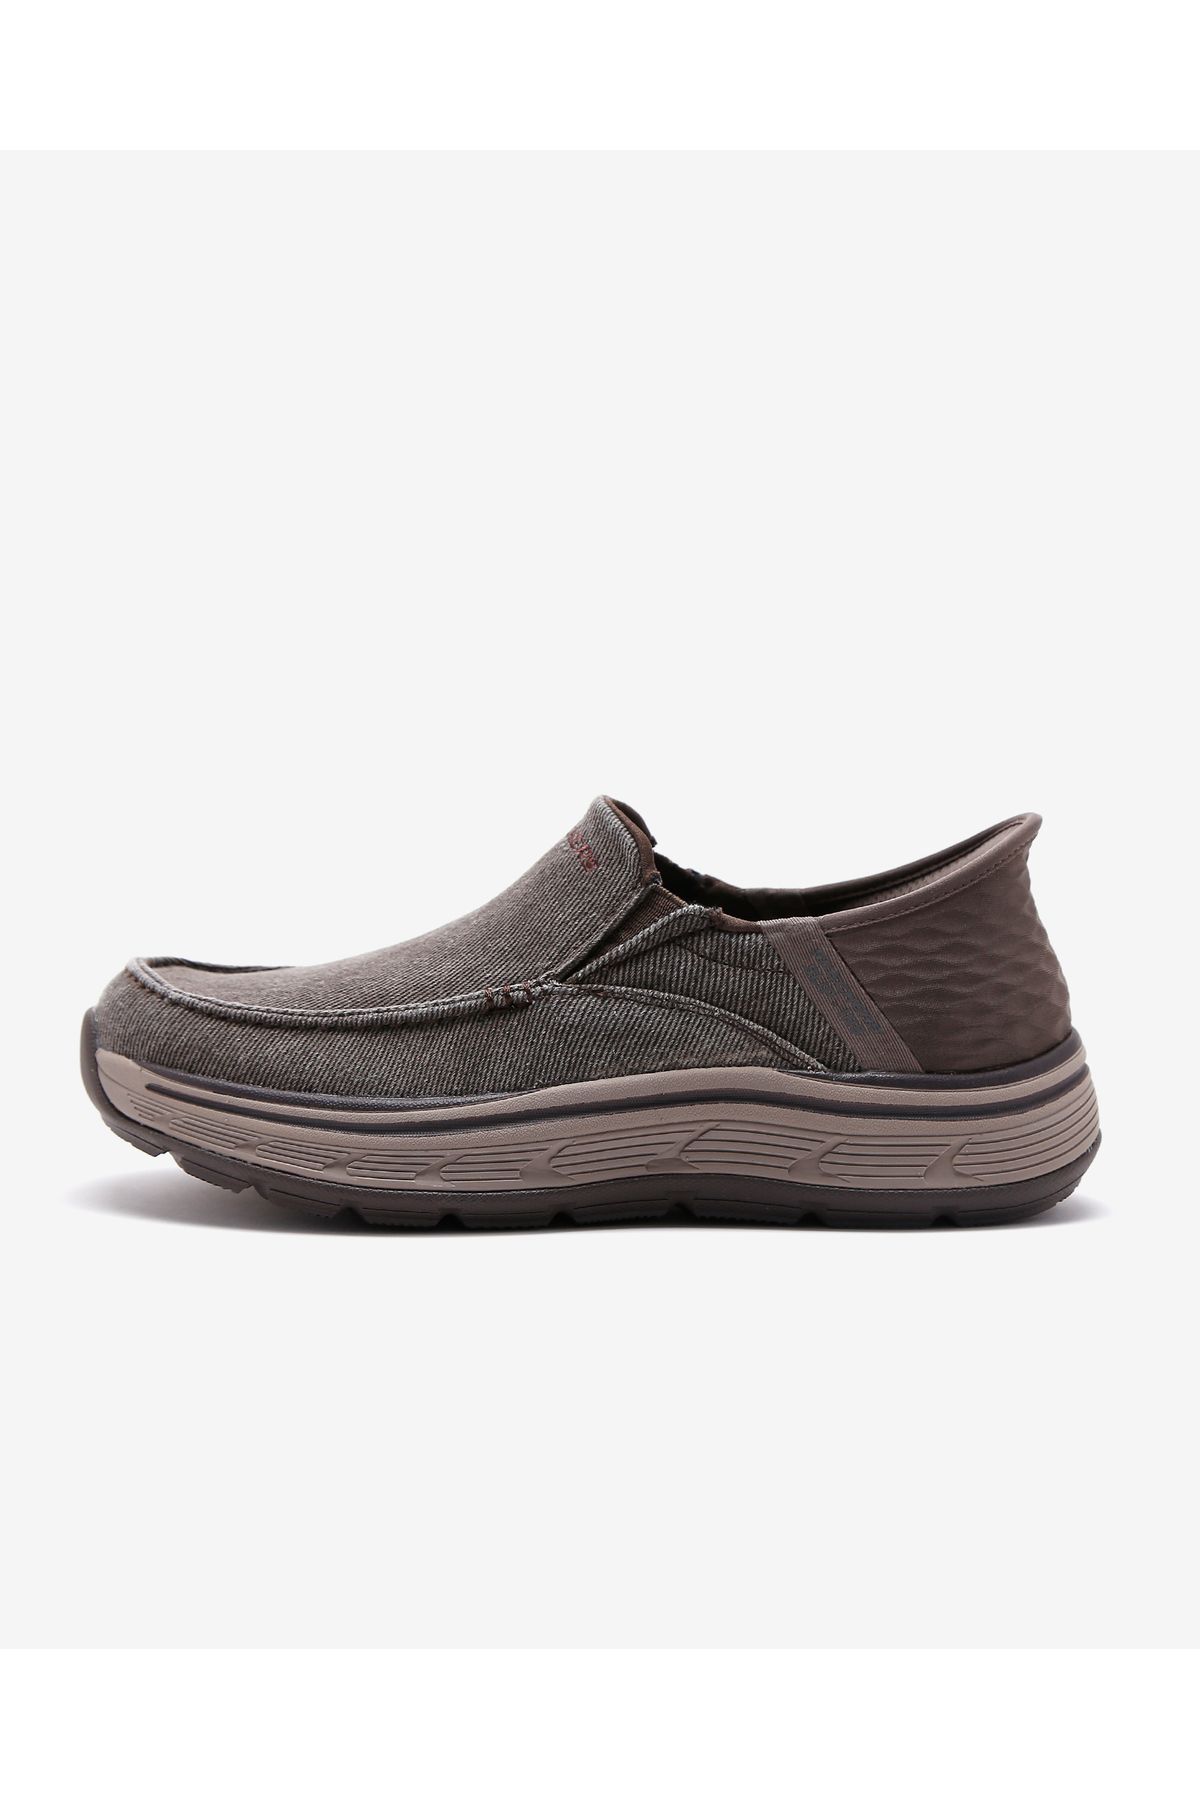 Skechers Remaxed - Fenick - Slip-ıns Erkek Kahverengi Günlük Ayakkabı 204839 Brn